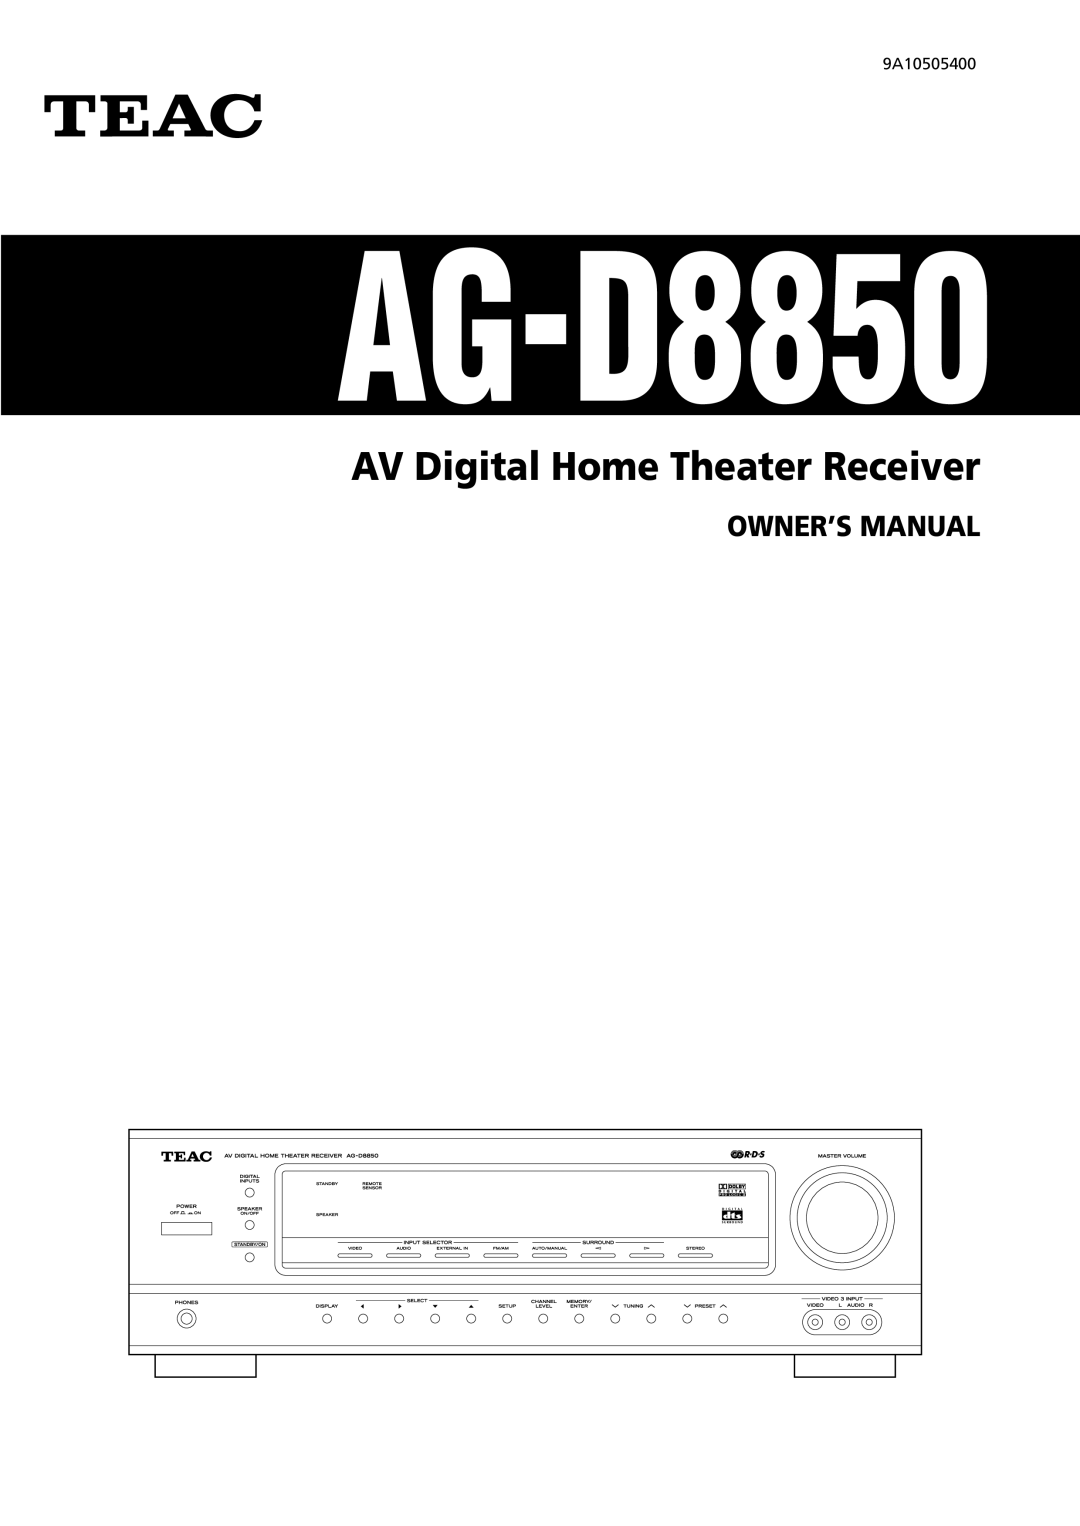 Teac AG-D8850 owner manual AV Digital Home Theater Receiver 